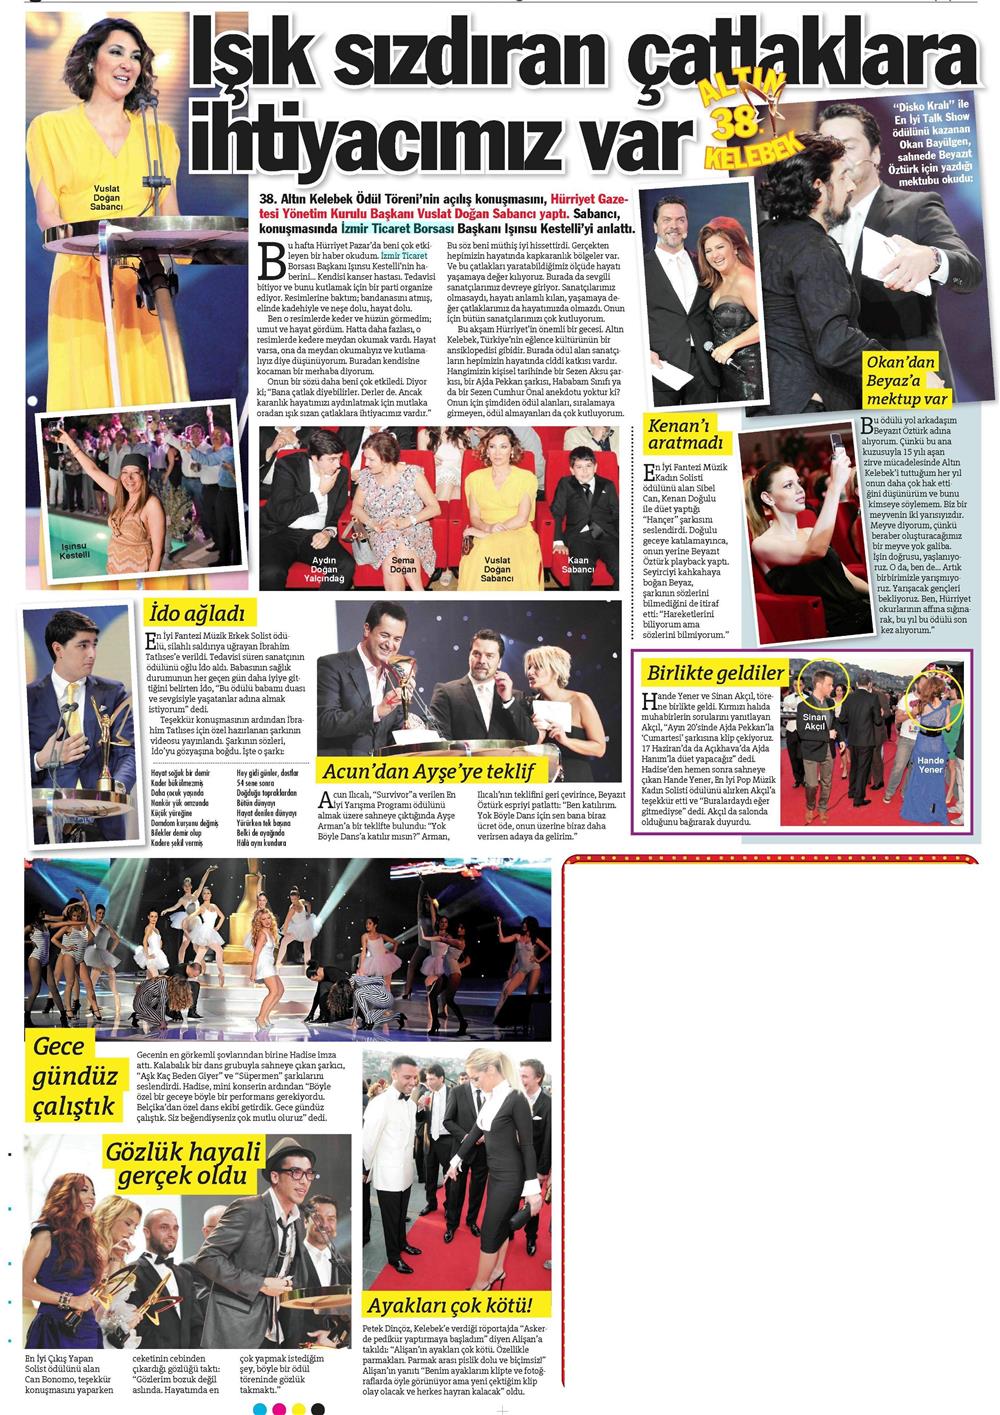 Hürriyet Gazetesi - Kelebek Eki - 15.06.2011